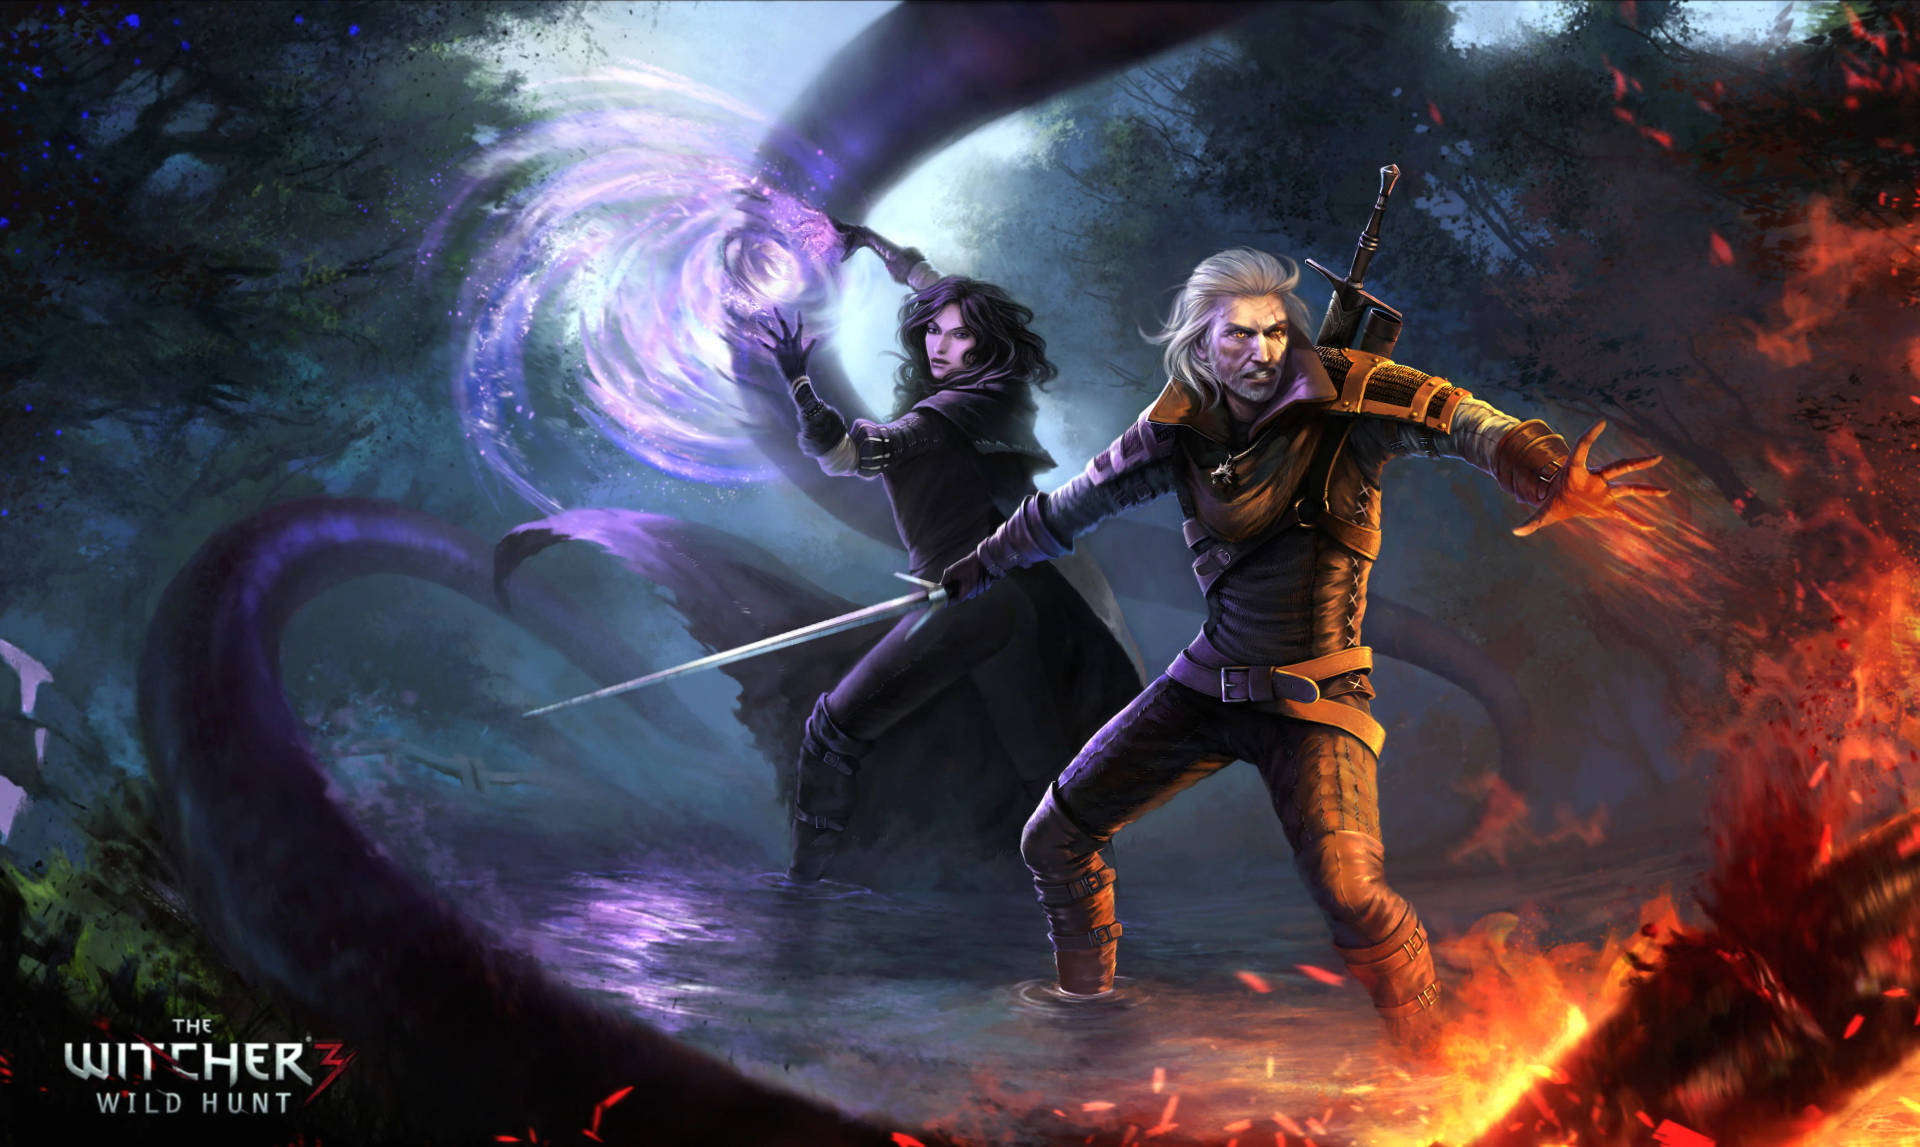 Witcher3 4k Wallpaper Mit Yennefer Und Geralt Wallpaper